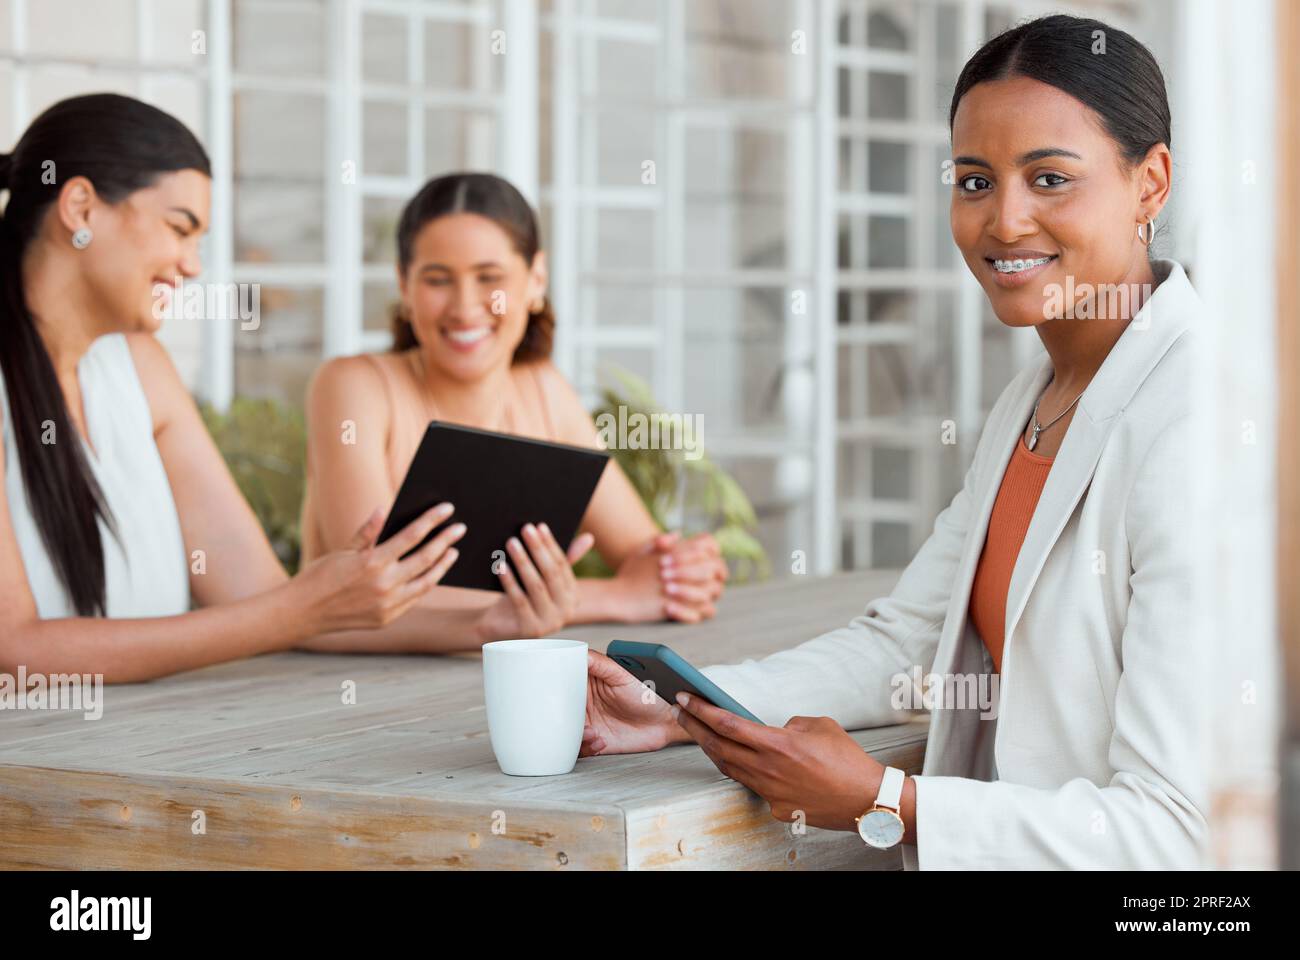 Leadership femminile, innovazione e donna d'affari o colleghi con un tablet, che si godono una pausa caffè o un multitasking durante le riunioni in un luogo di lavoro alla moda. Leader o manager intelligente soddisfatti del ritratto del lavoro Foto Stock